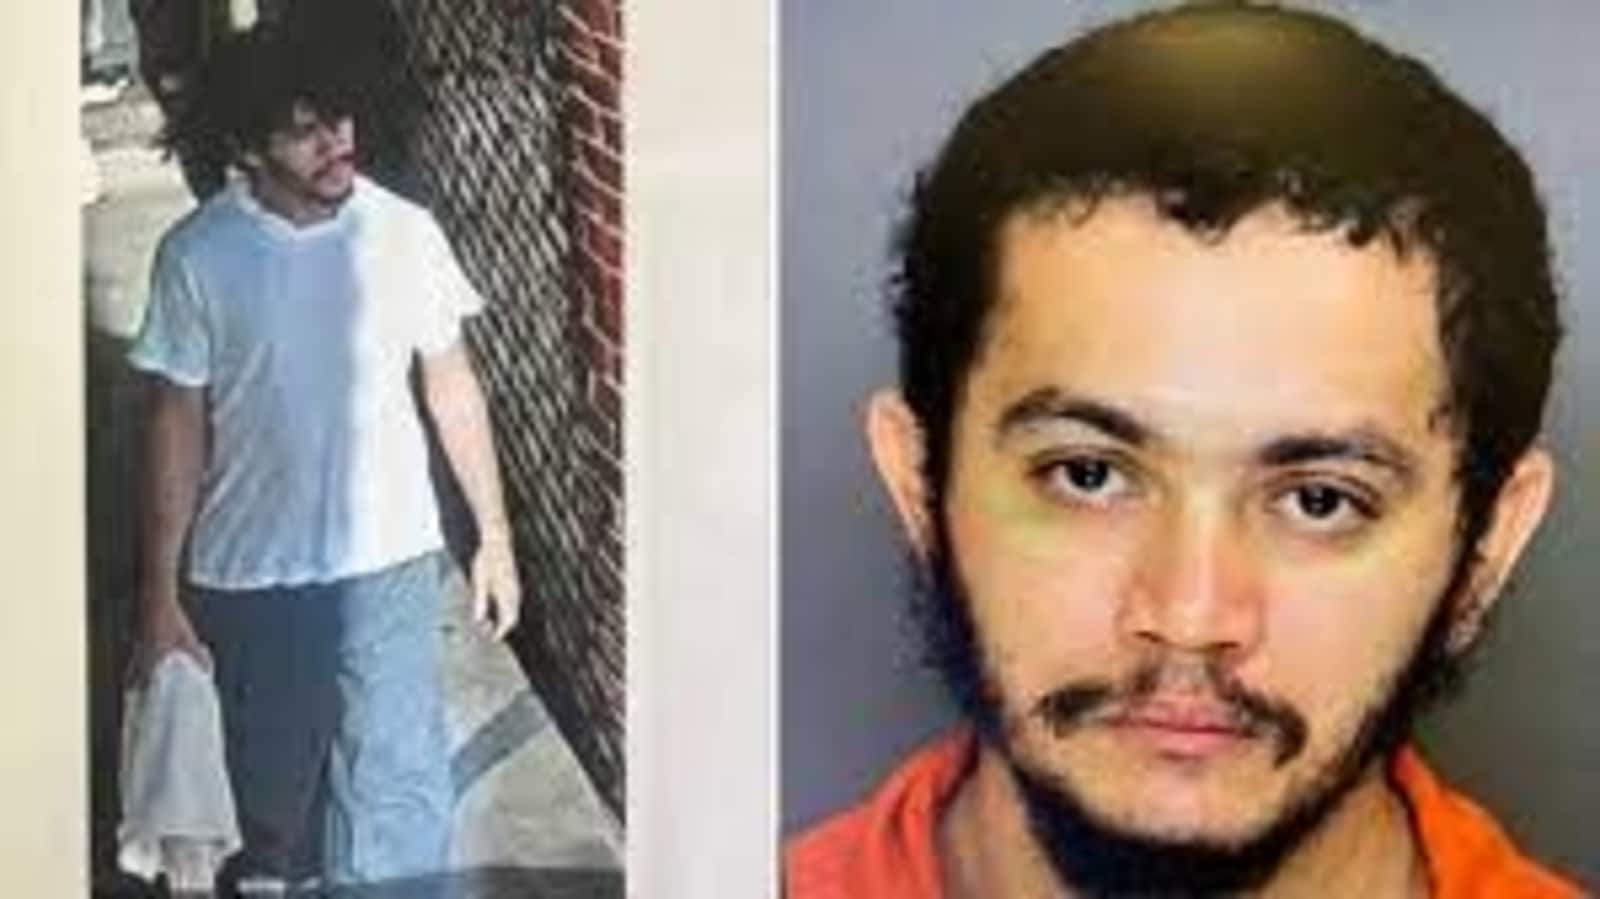 Pennsylvania: Escaped murderer Danelo Cavalcante sighted near Chester County prison